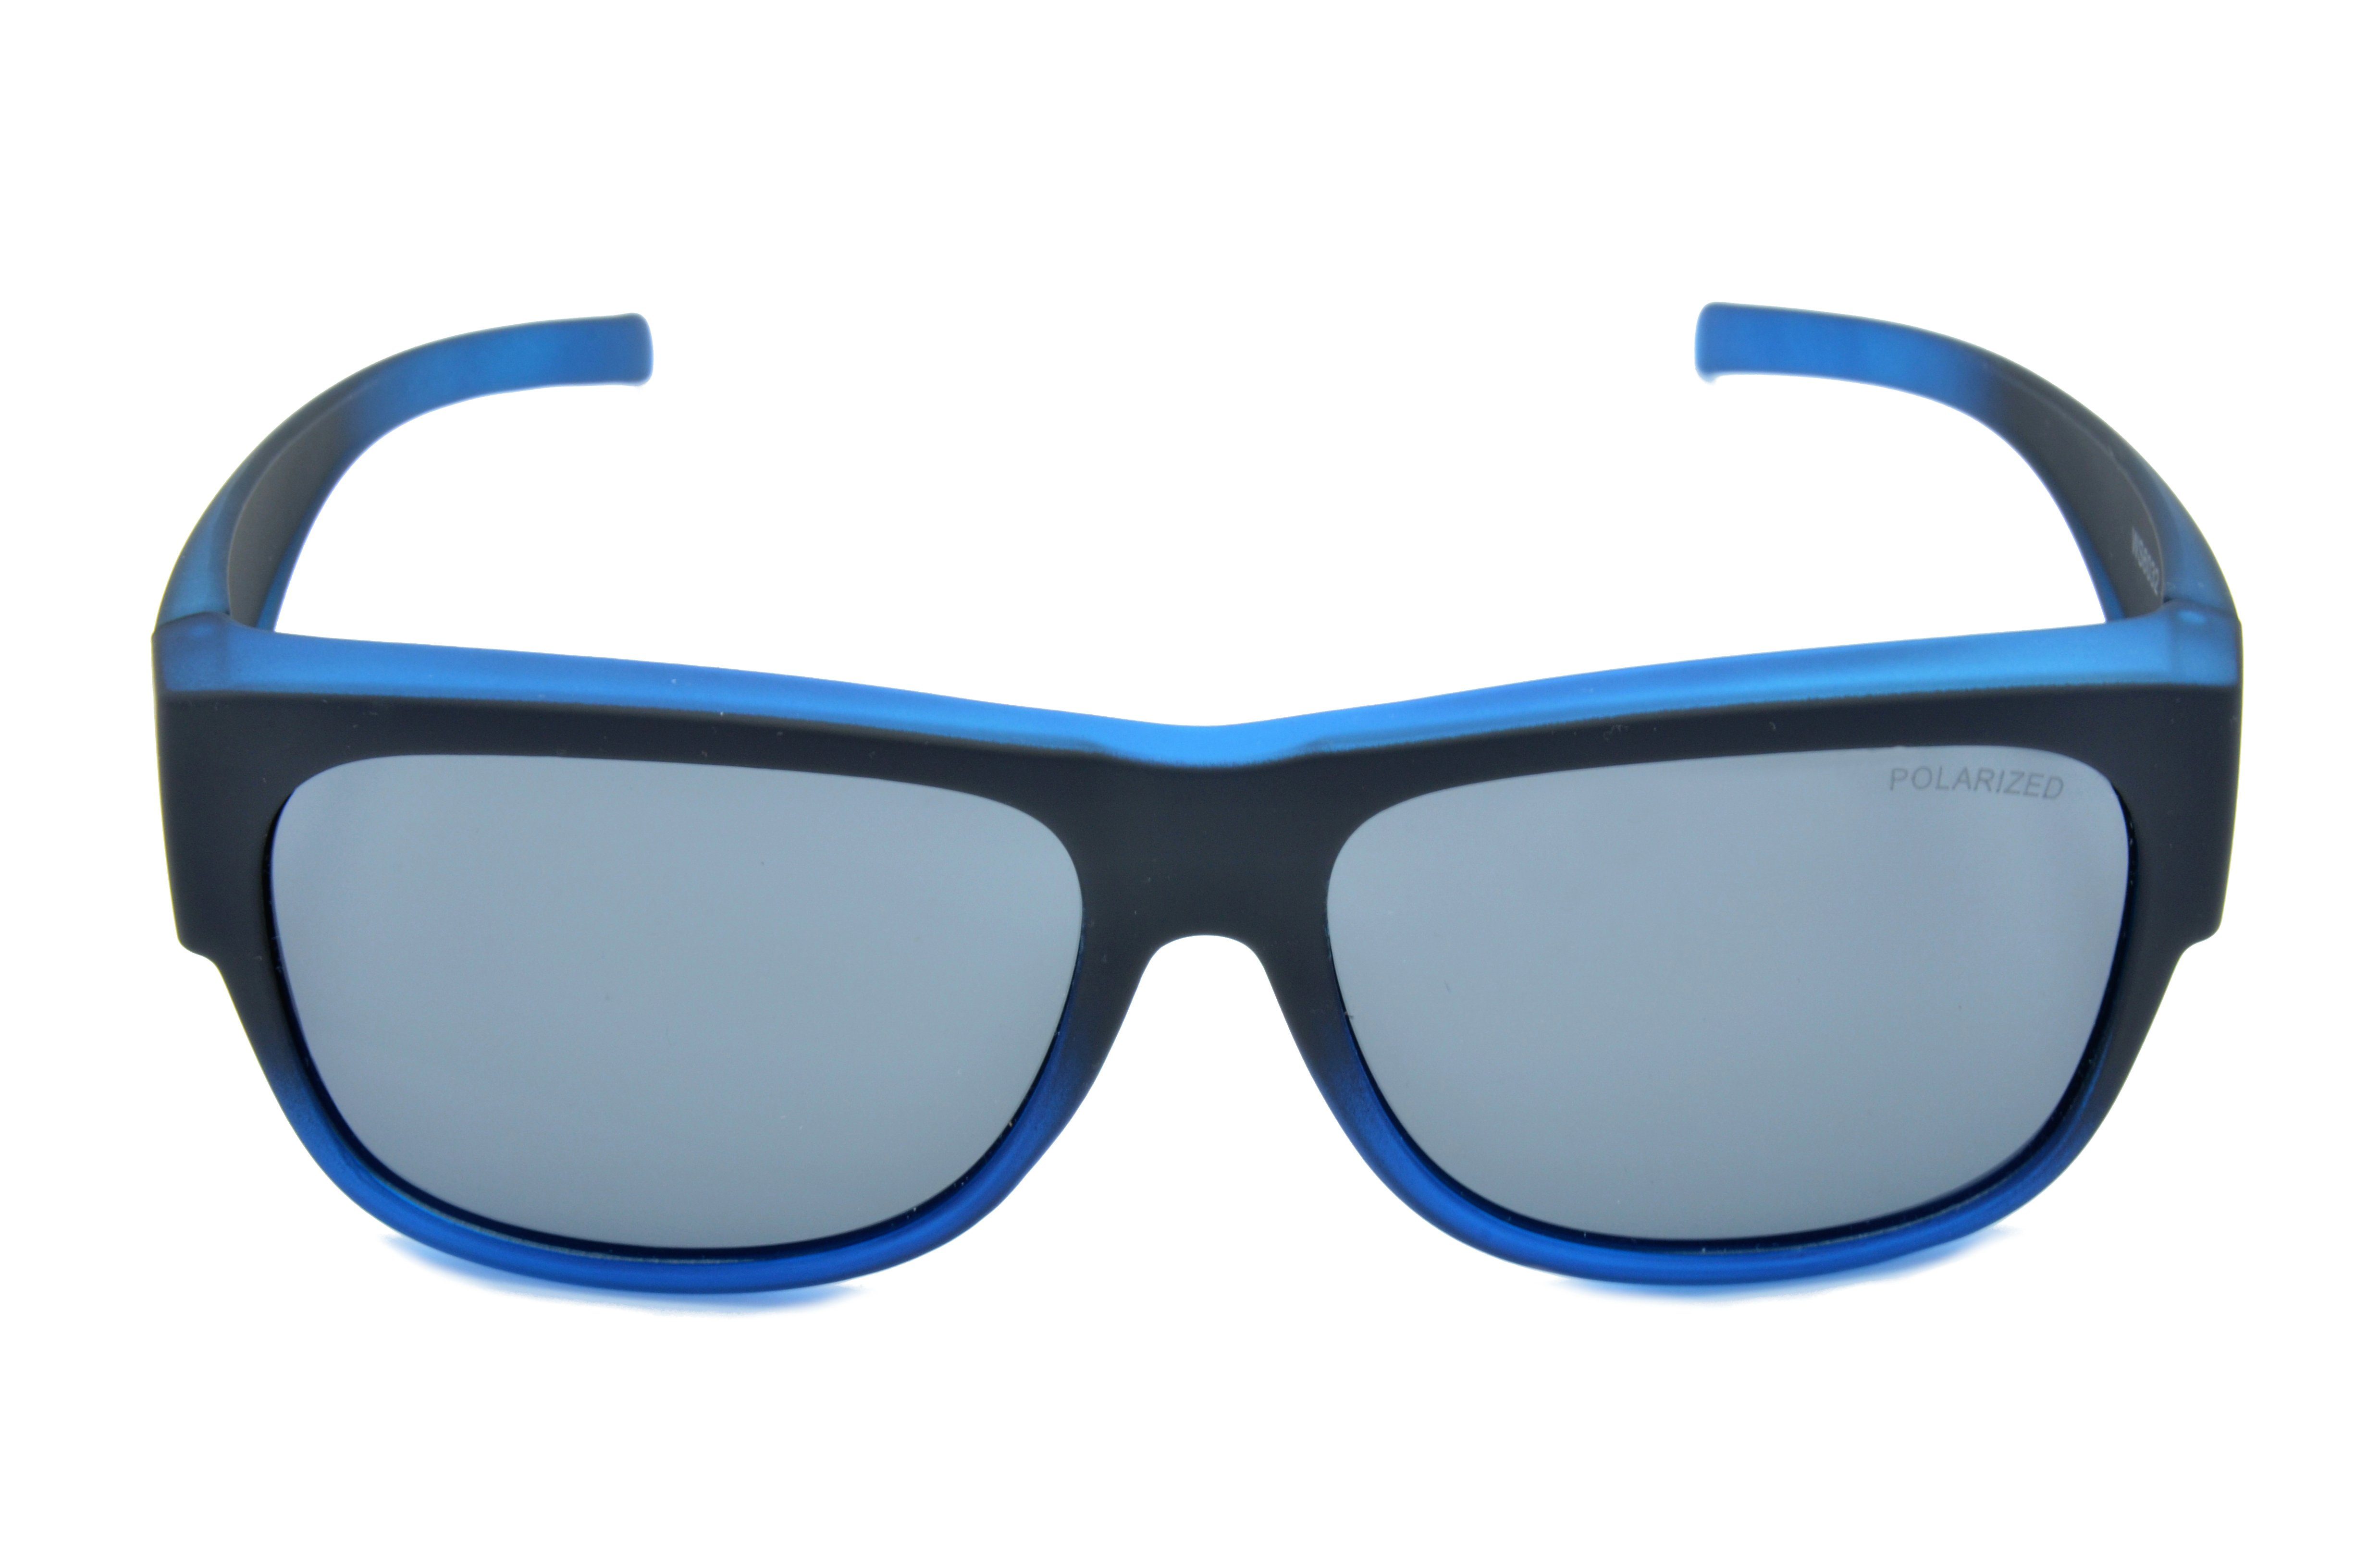 Gamswild Sportbrille WS6022 Überbrille Passform, universelle schwarz G15, unisex, blau, Damen Herren, Sonnenbrille Sportbrille Rubbertouchbeschichtung beere